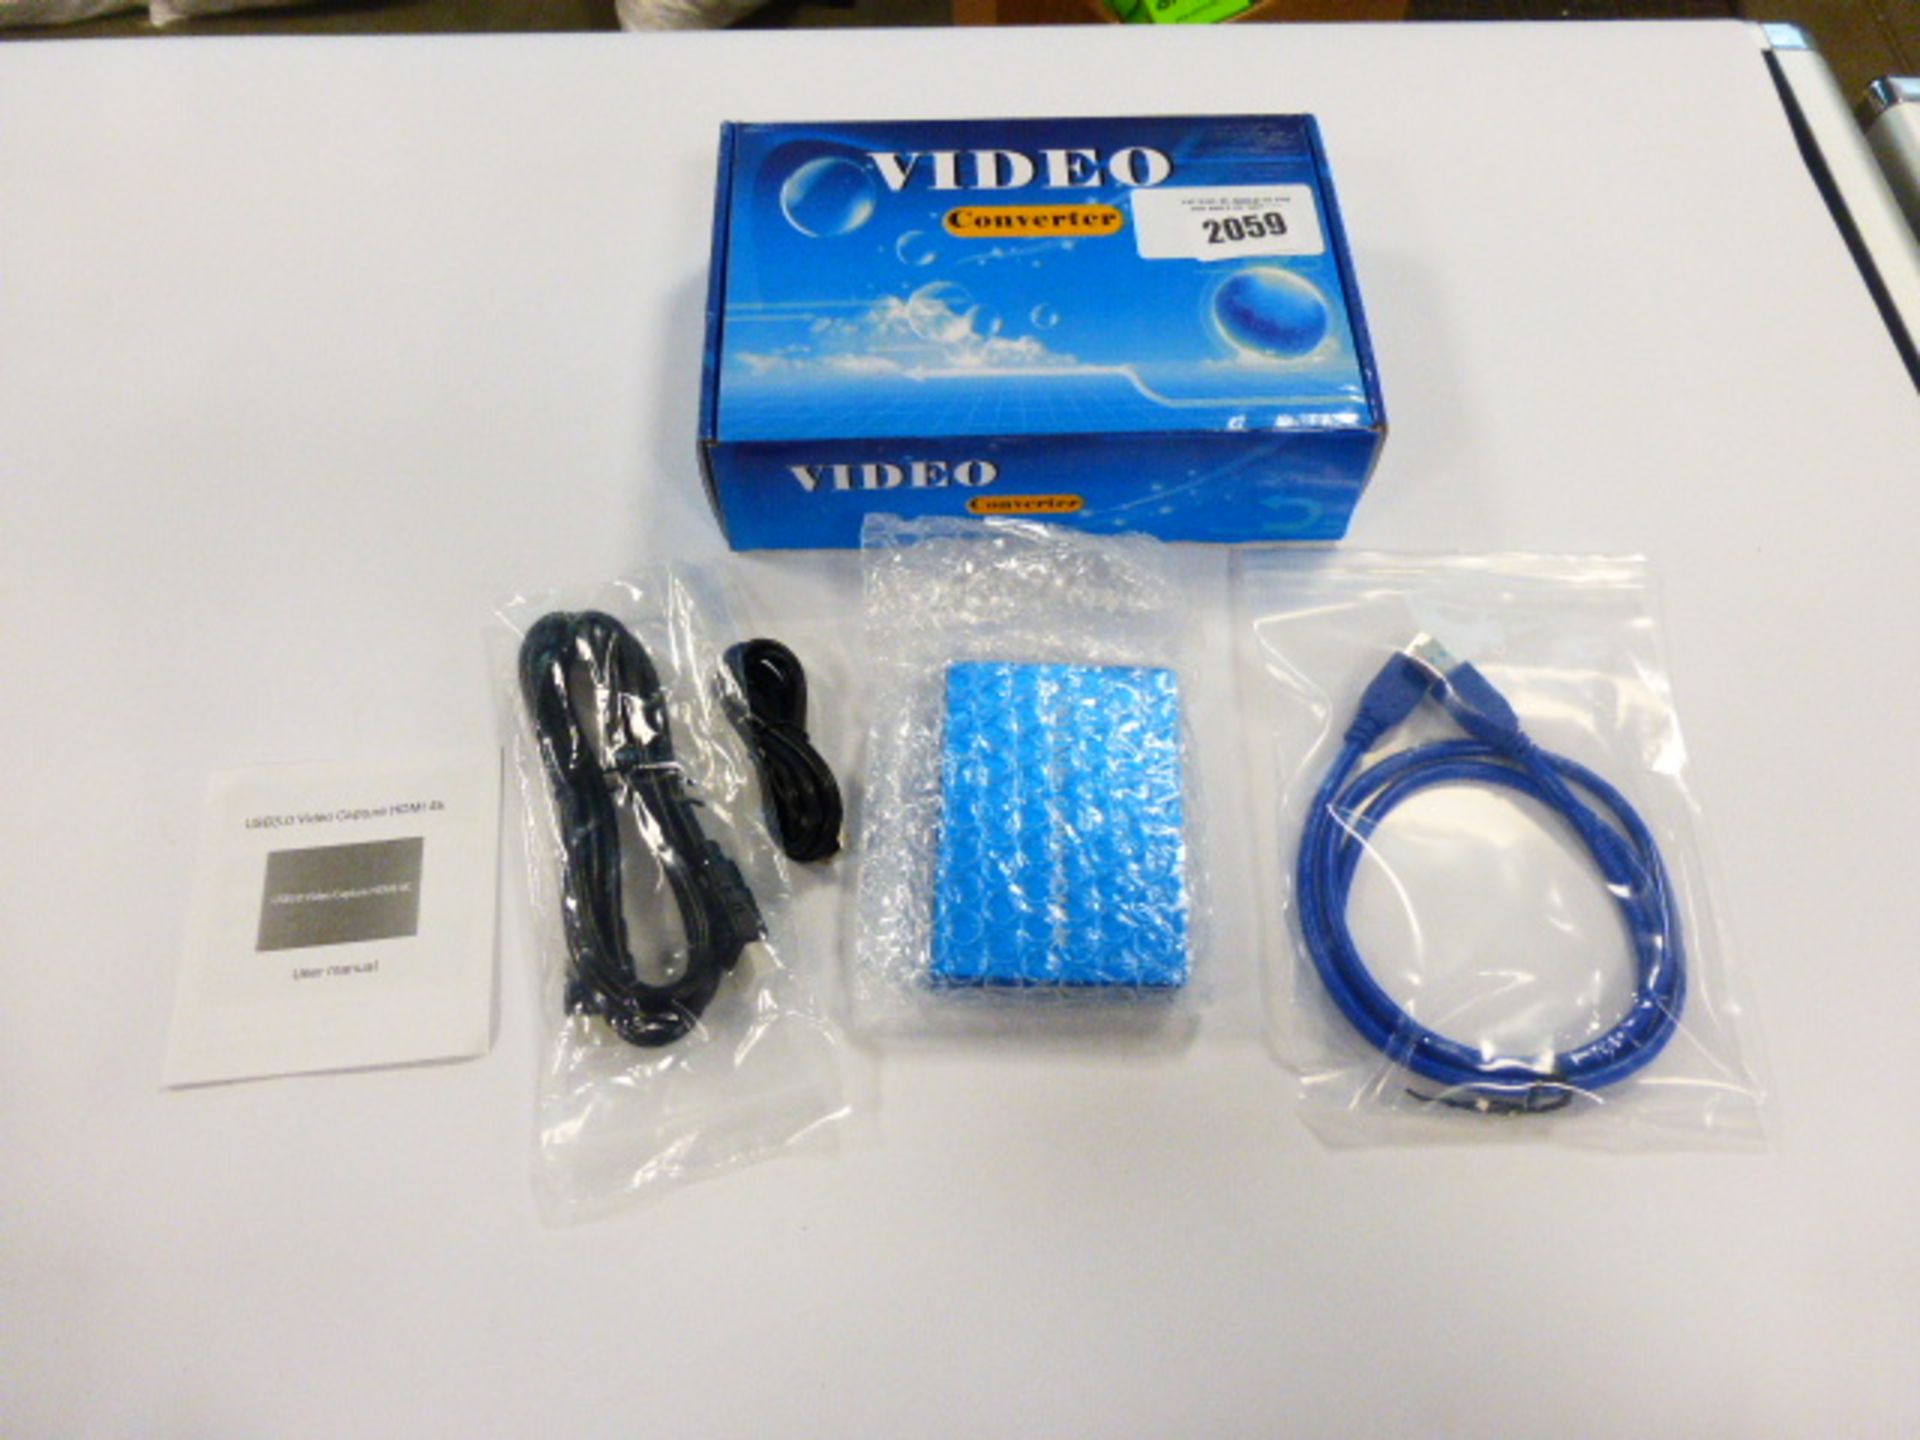 2016 - HDMI video converter unit in box